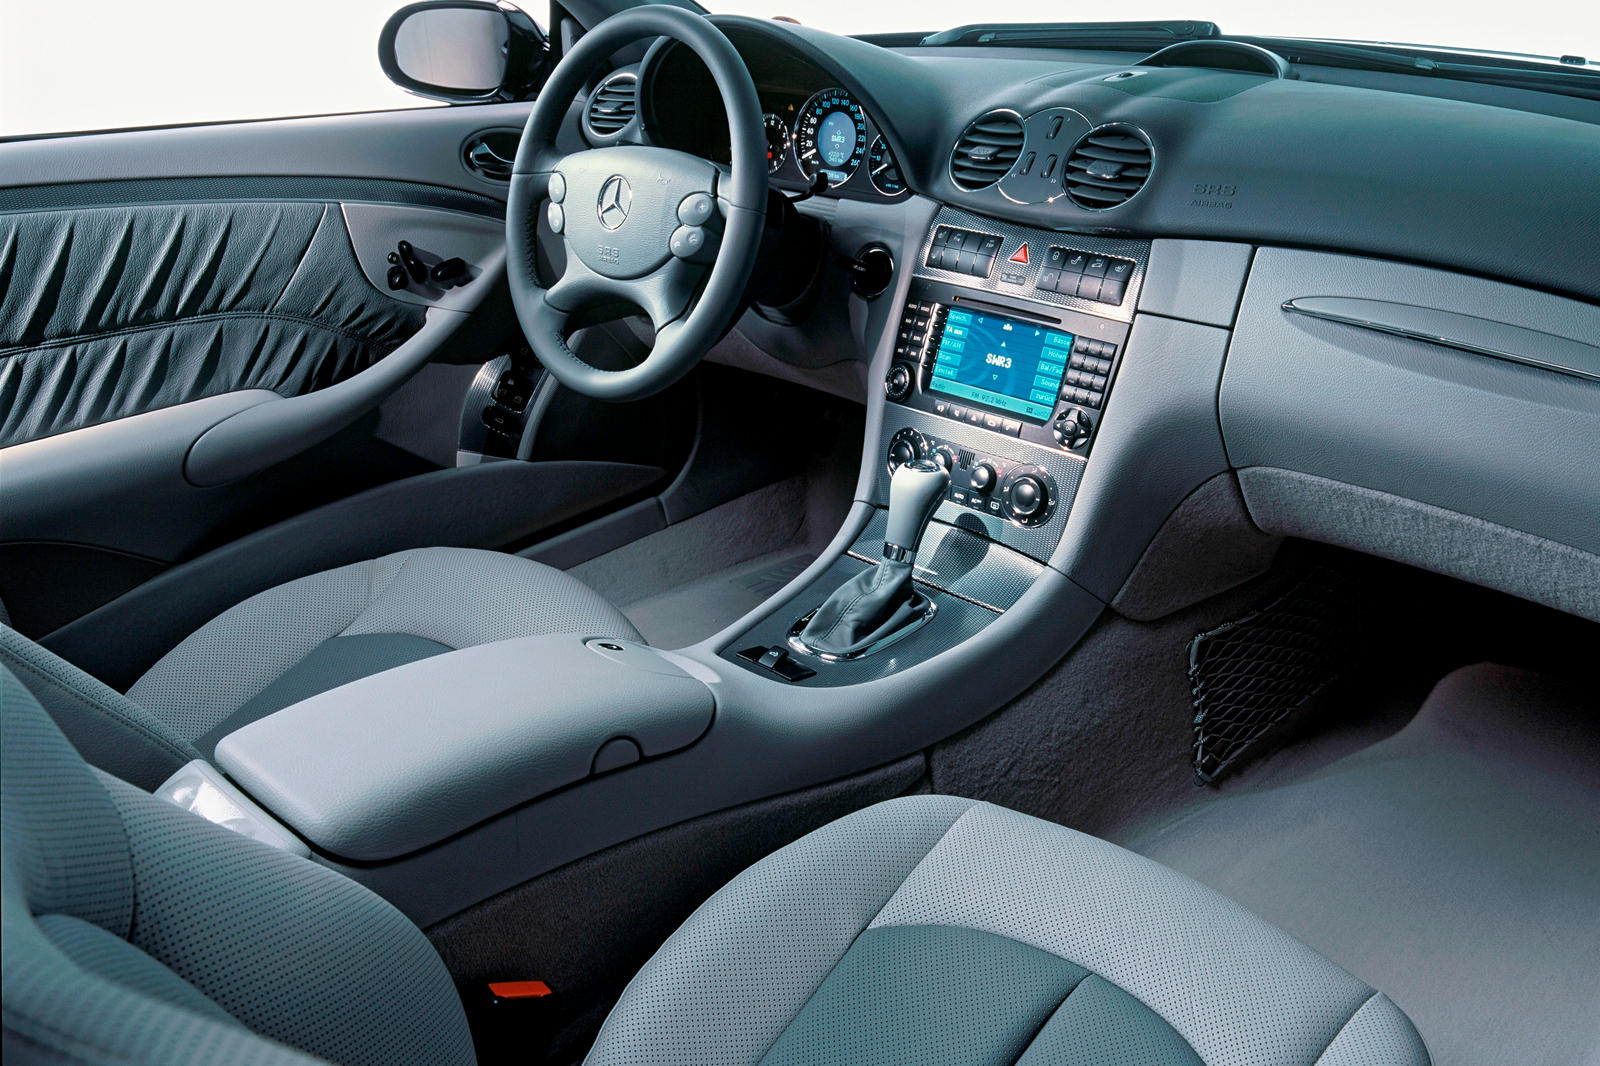 2009 Mercedes-Benz CLK-Class Coupe Interior Photos | CarBuzz